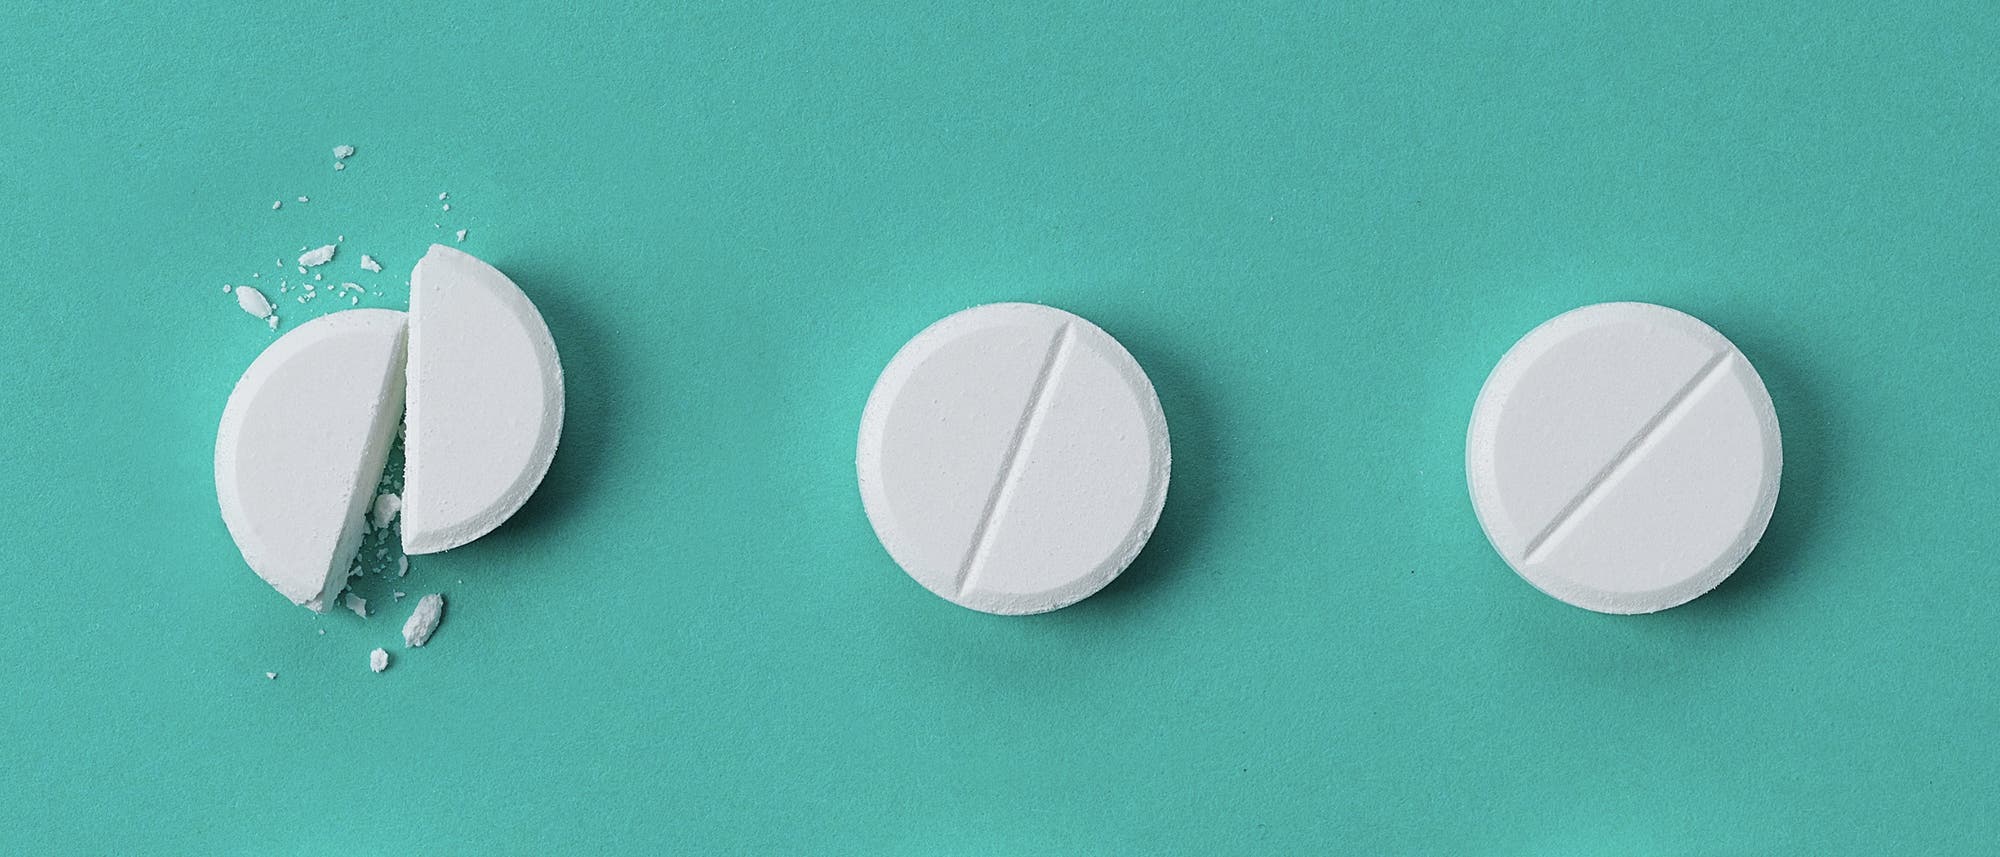  30 bis 60 Minuten nach Einnahme einer Tablette ist die Wirkung von Paracetamol am stärksten.